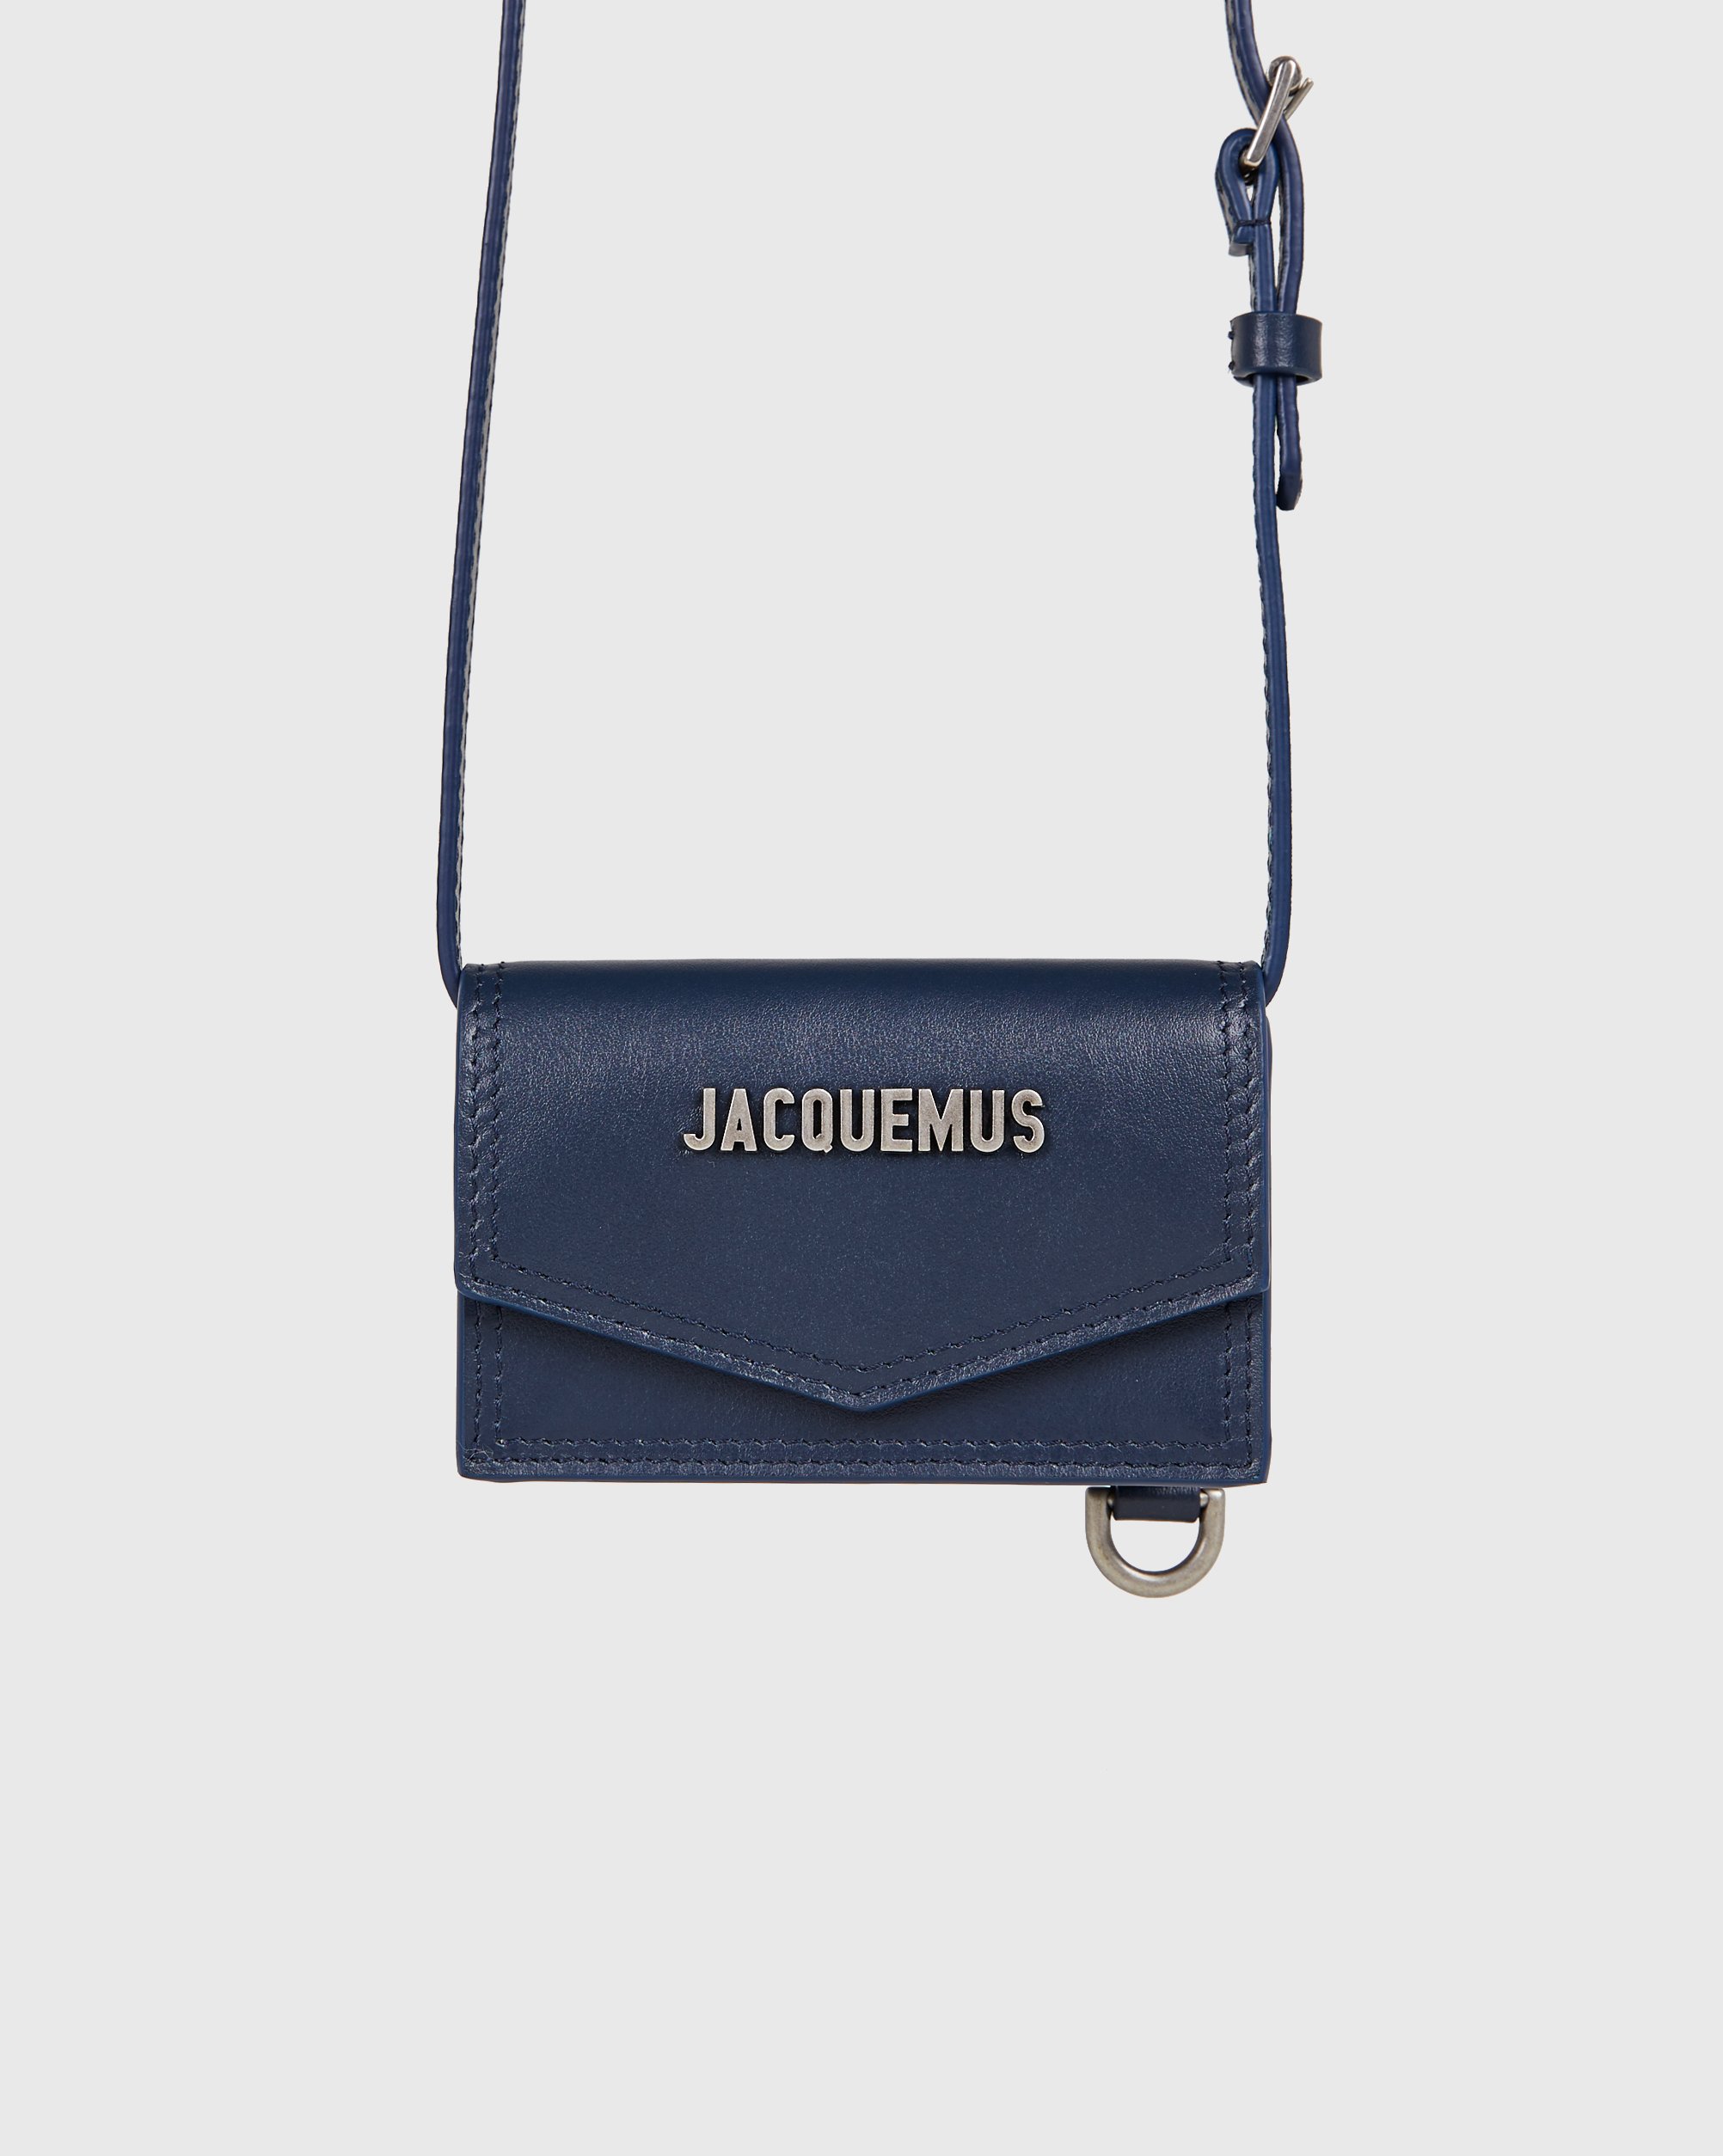 JACQUEMUS - Le Porte Azur Navy - Accessories - Blue - Image 1